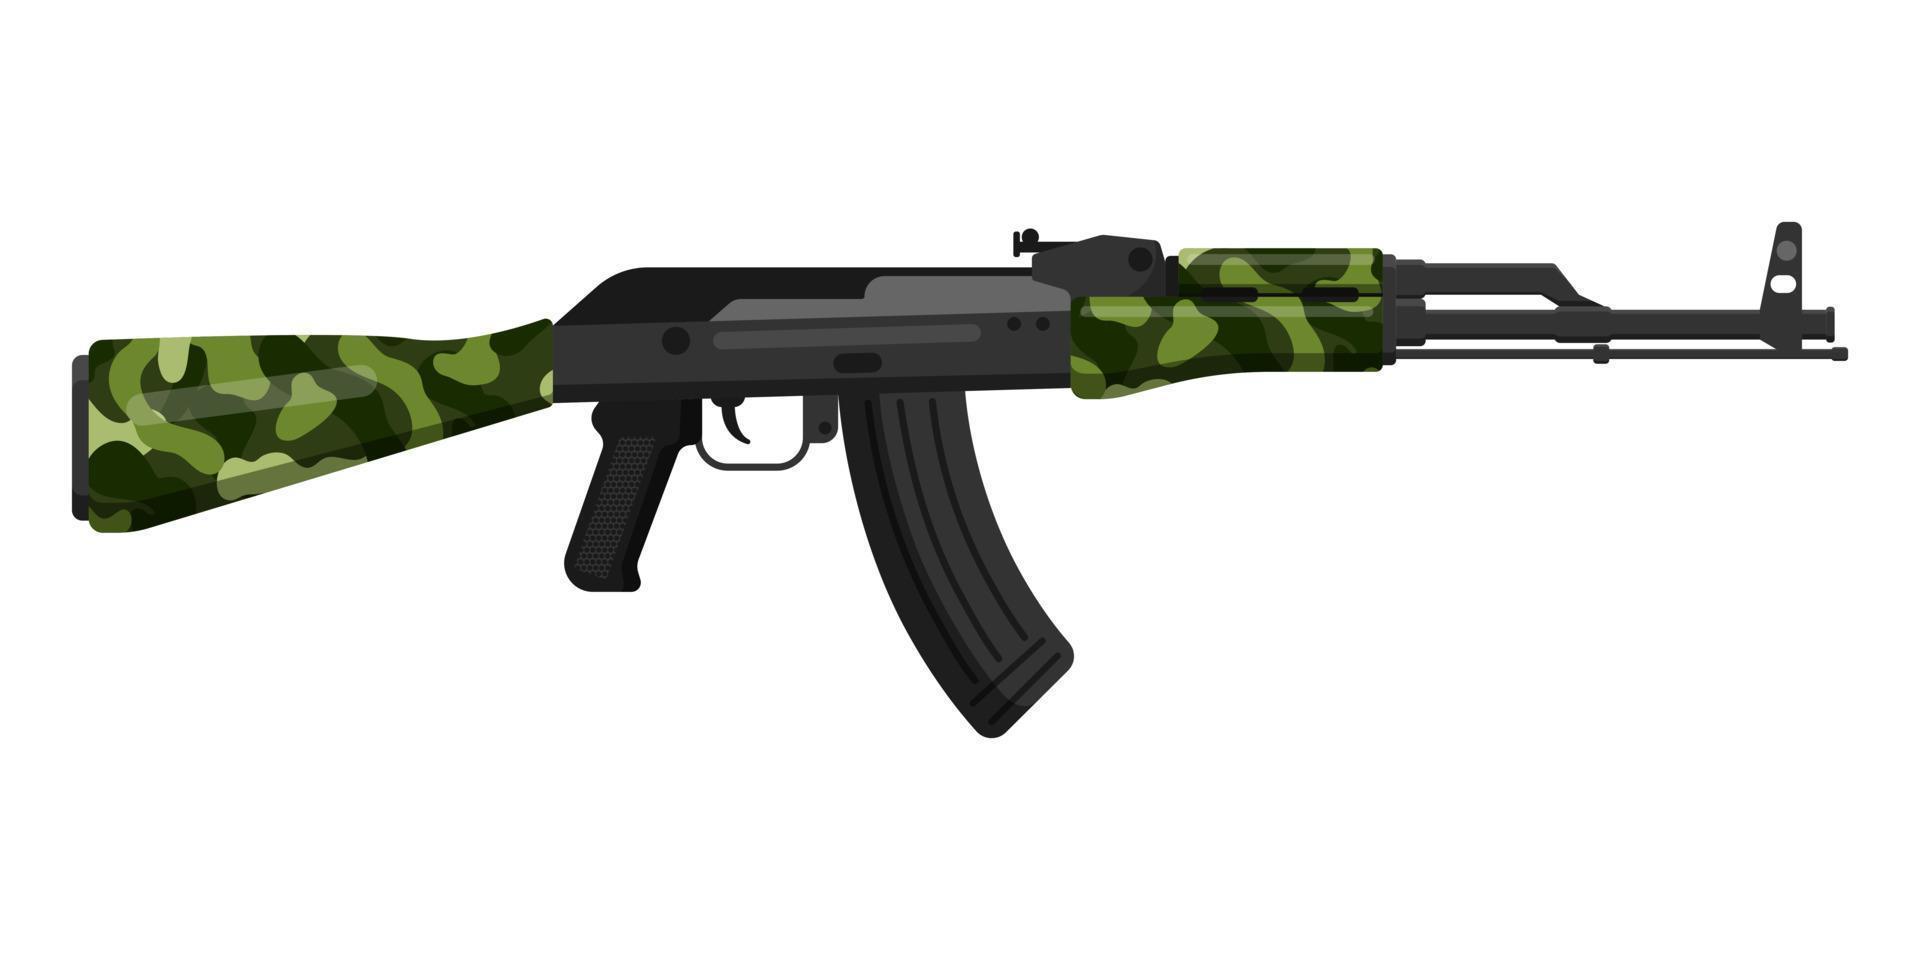 Rifle de asalto kalashnikov ak 47 de camuflaje caqui verde oliva ruso con culata. concepto de terrorismo y guerra. vector